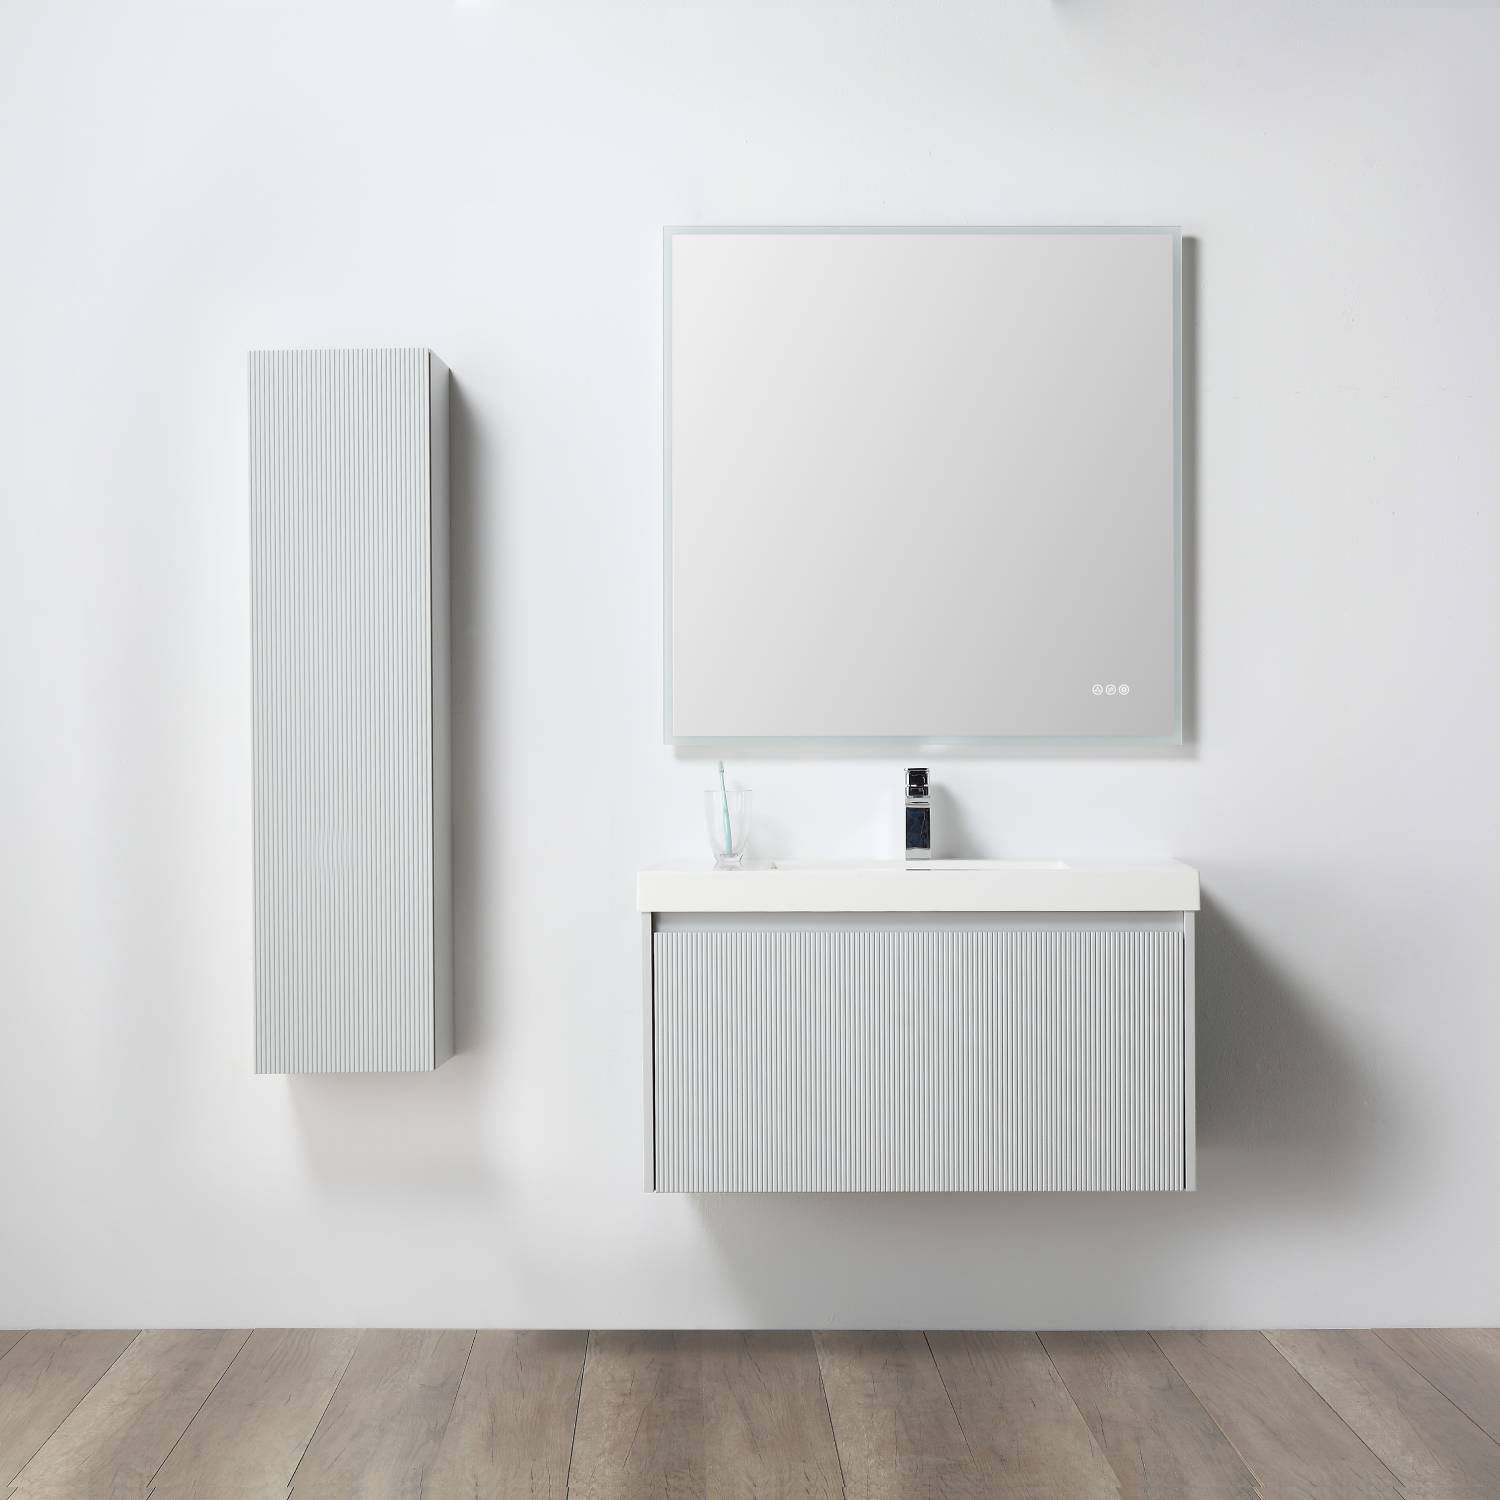 Positano 36" Bathroom Vanity  #size_36"  #color_light grey